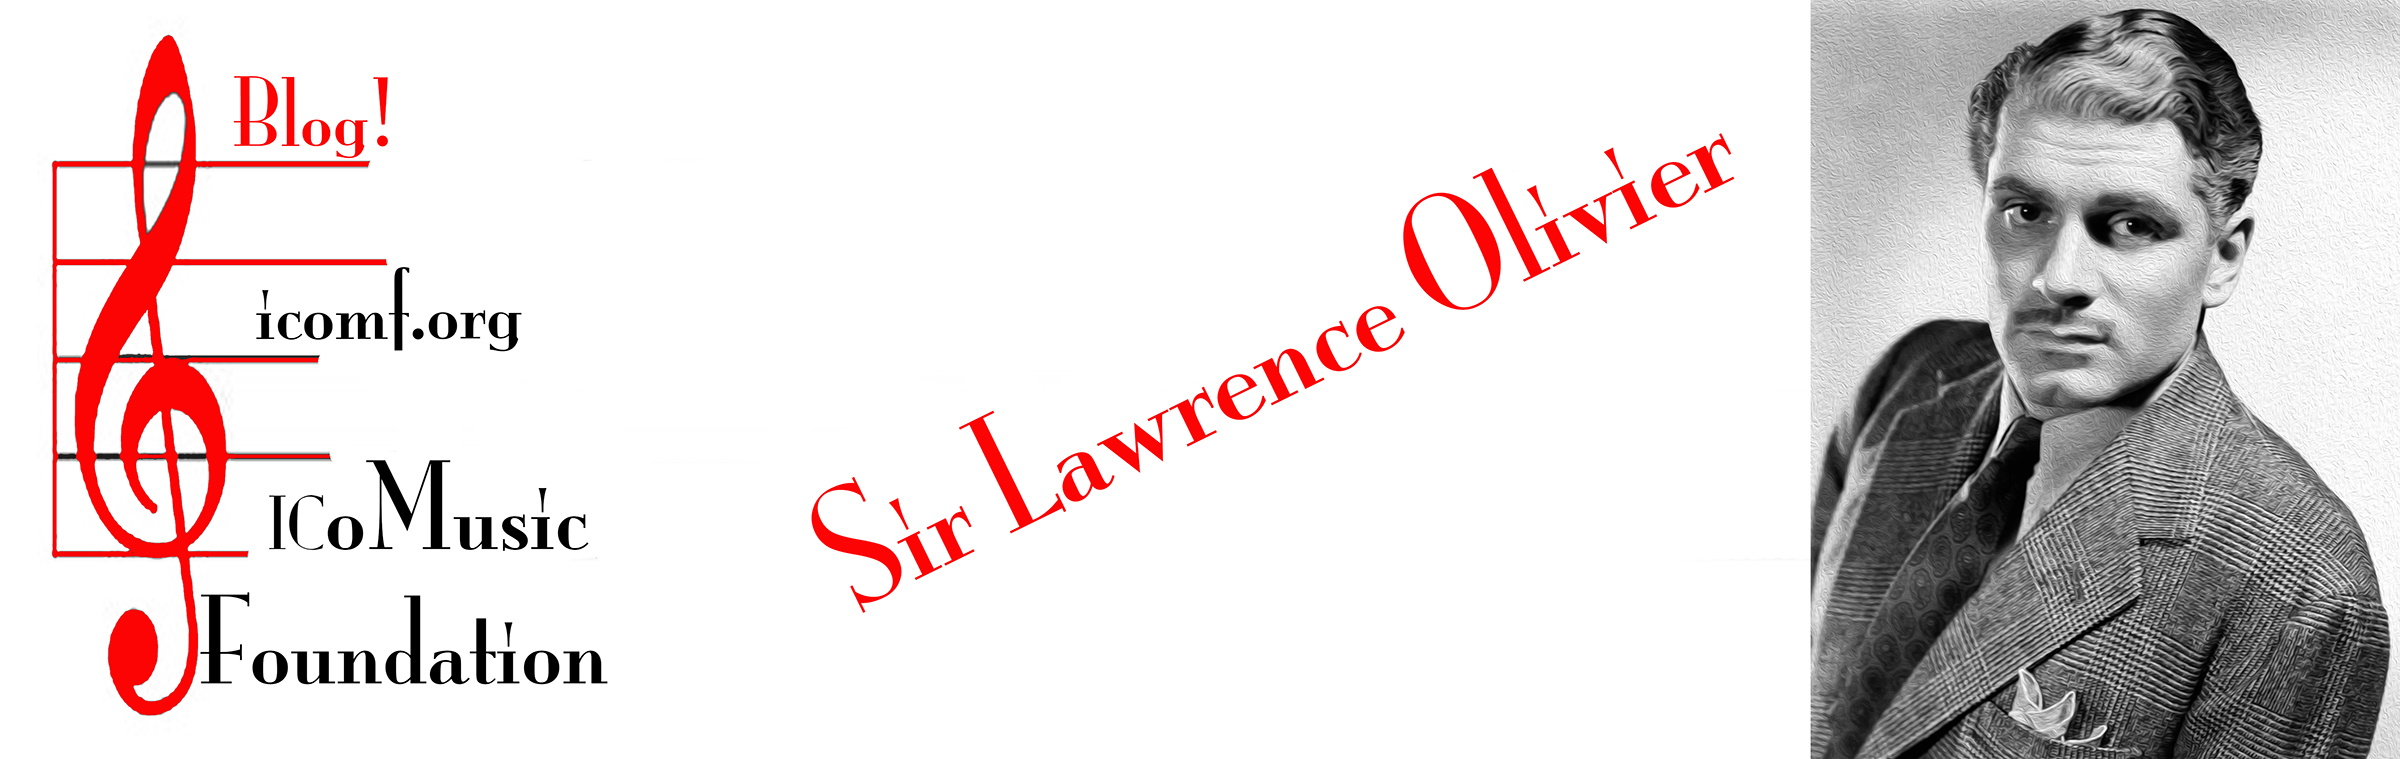 Sir Lawrence Olivier blog banner